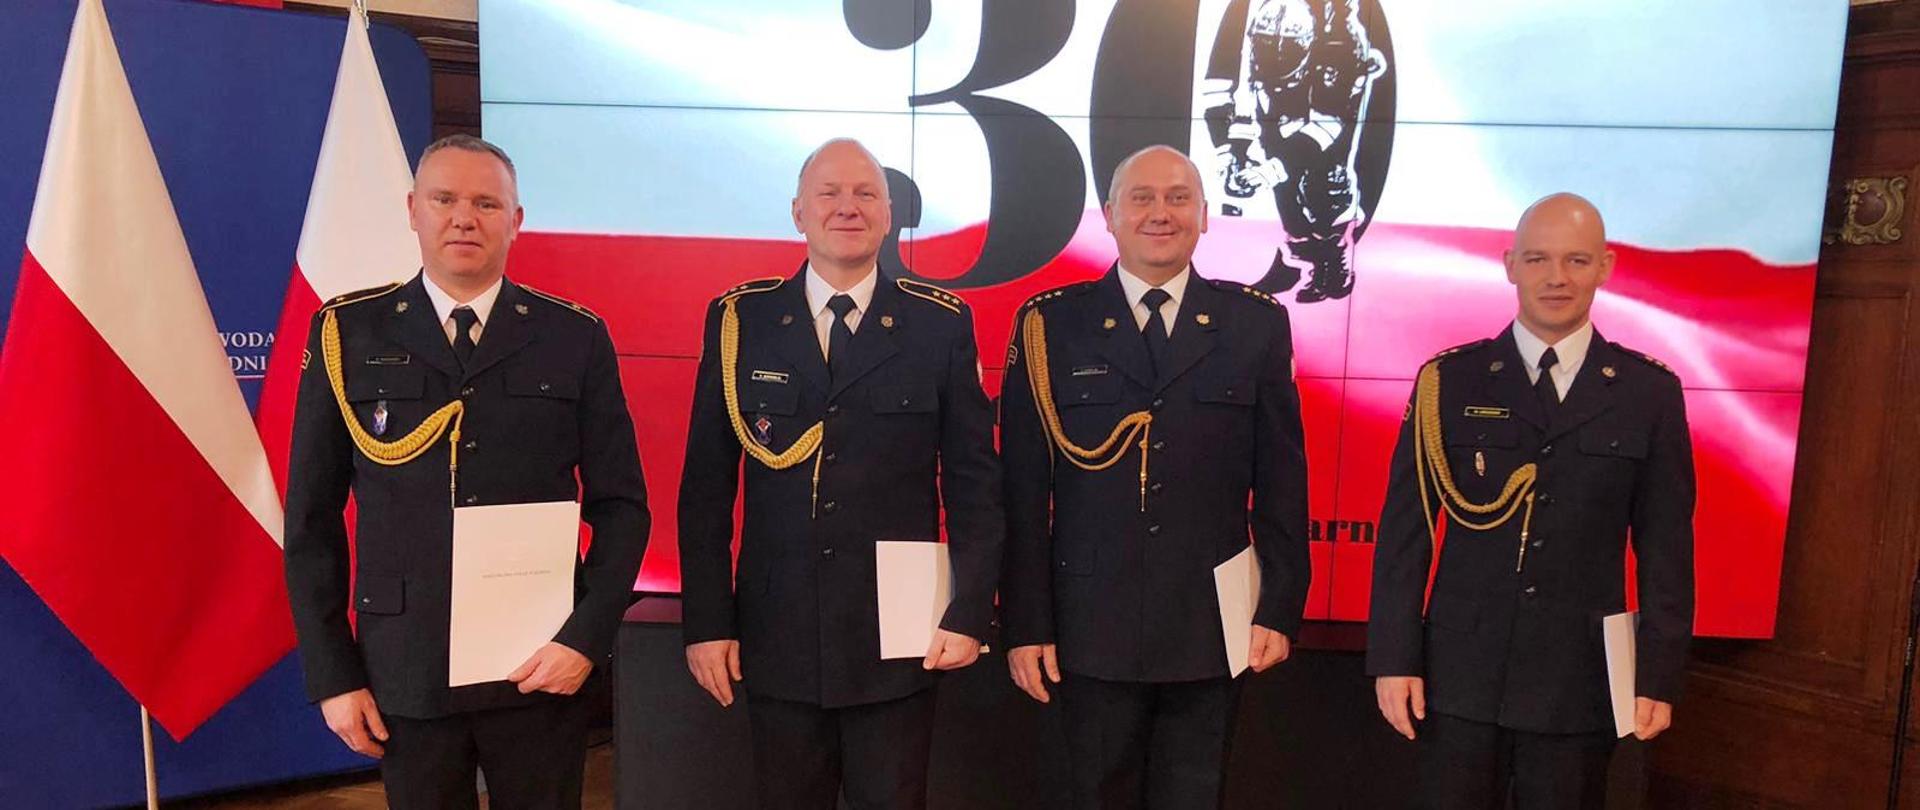 Czterech strażaków stojących w rzędzie, w ręku trzymają akty nadania awansów i nagród, w tle llogo z okazji 30-lecia PSP